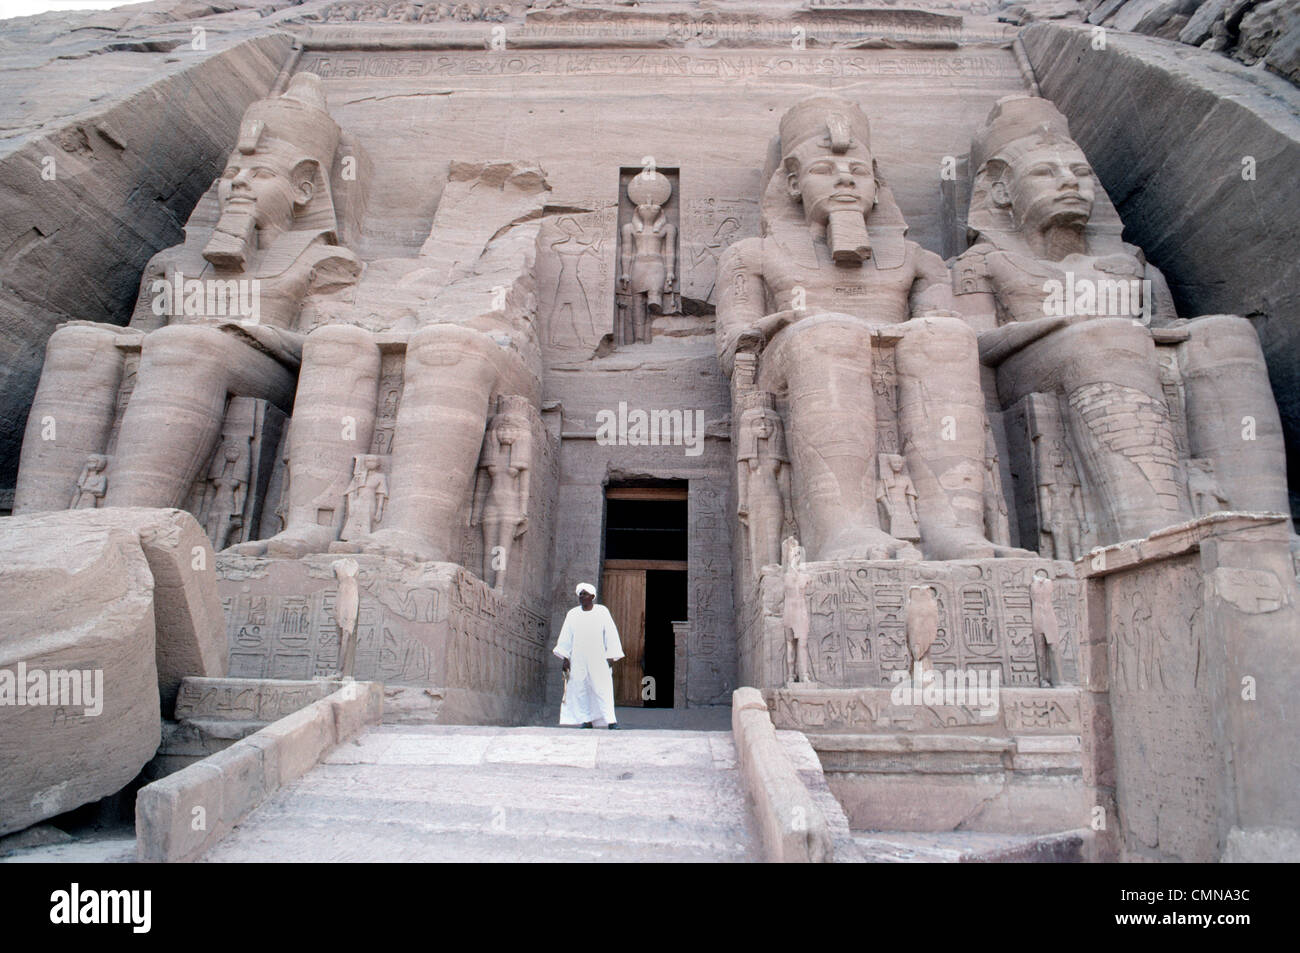 Quatre statues colossales de Ramsès II gardent l'entrée de son célèbre rock-cut temple à Abou Simbel construit en Nubie, l'Egypte, en l'honneur de lui-même en tant que pharaon. Banque D'Images